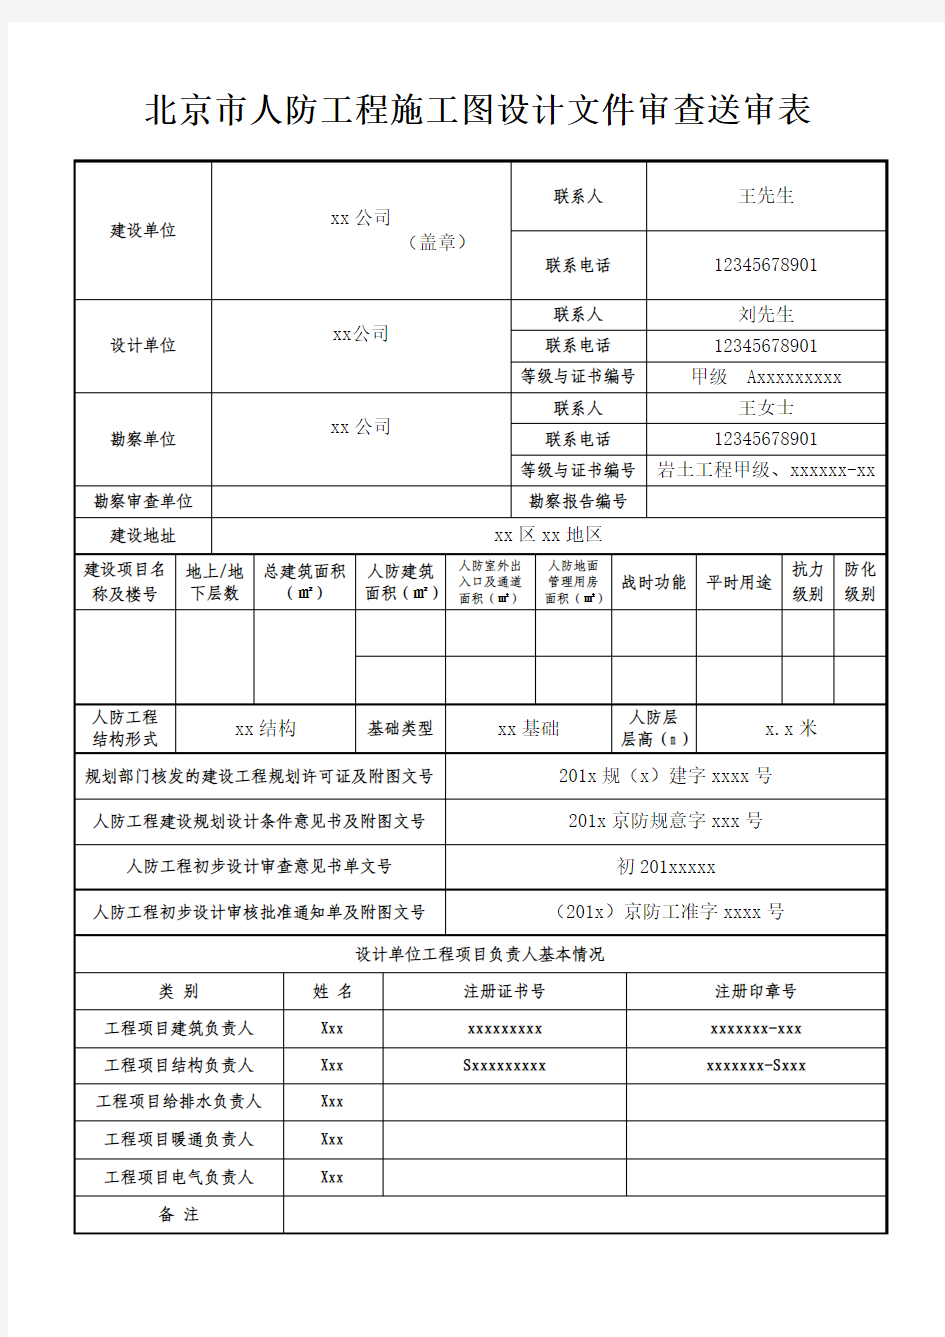 北京市人防工程施工图设计文件审查送审表